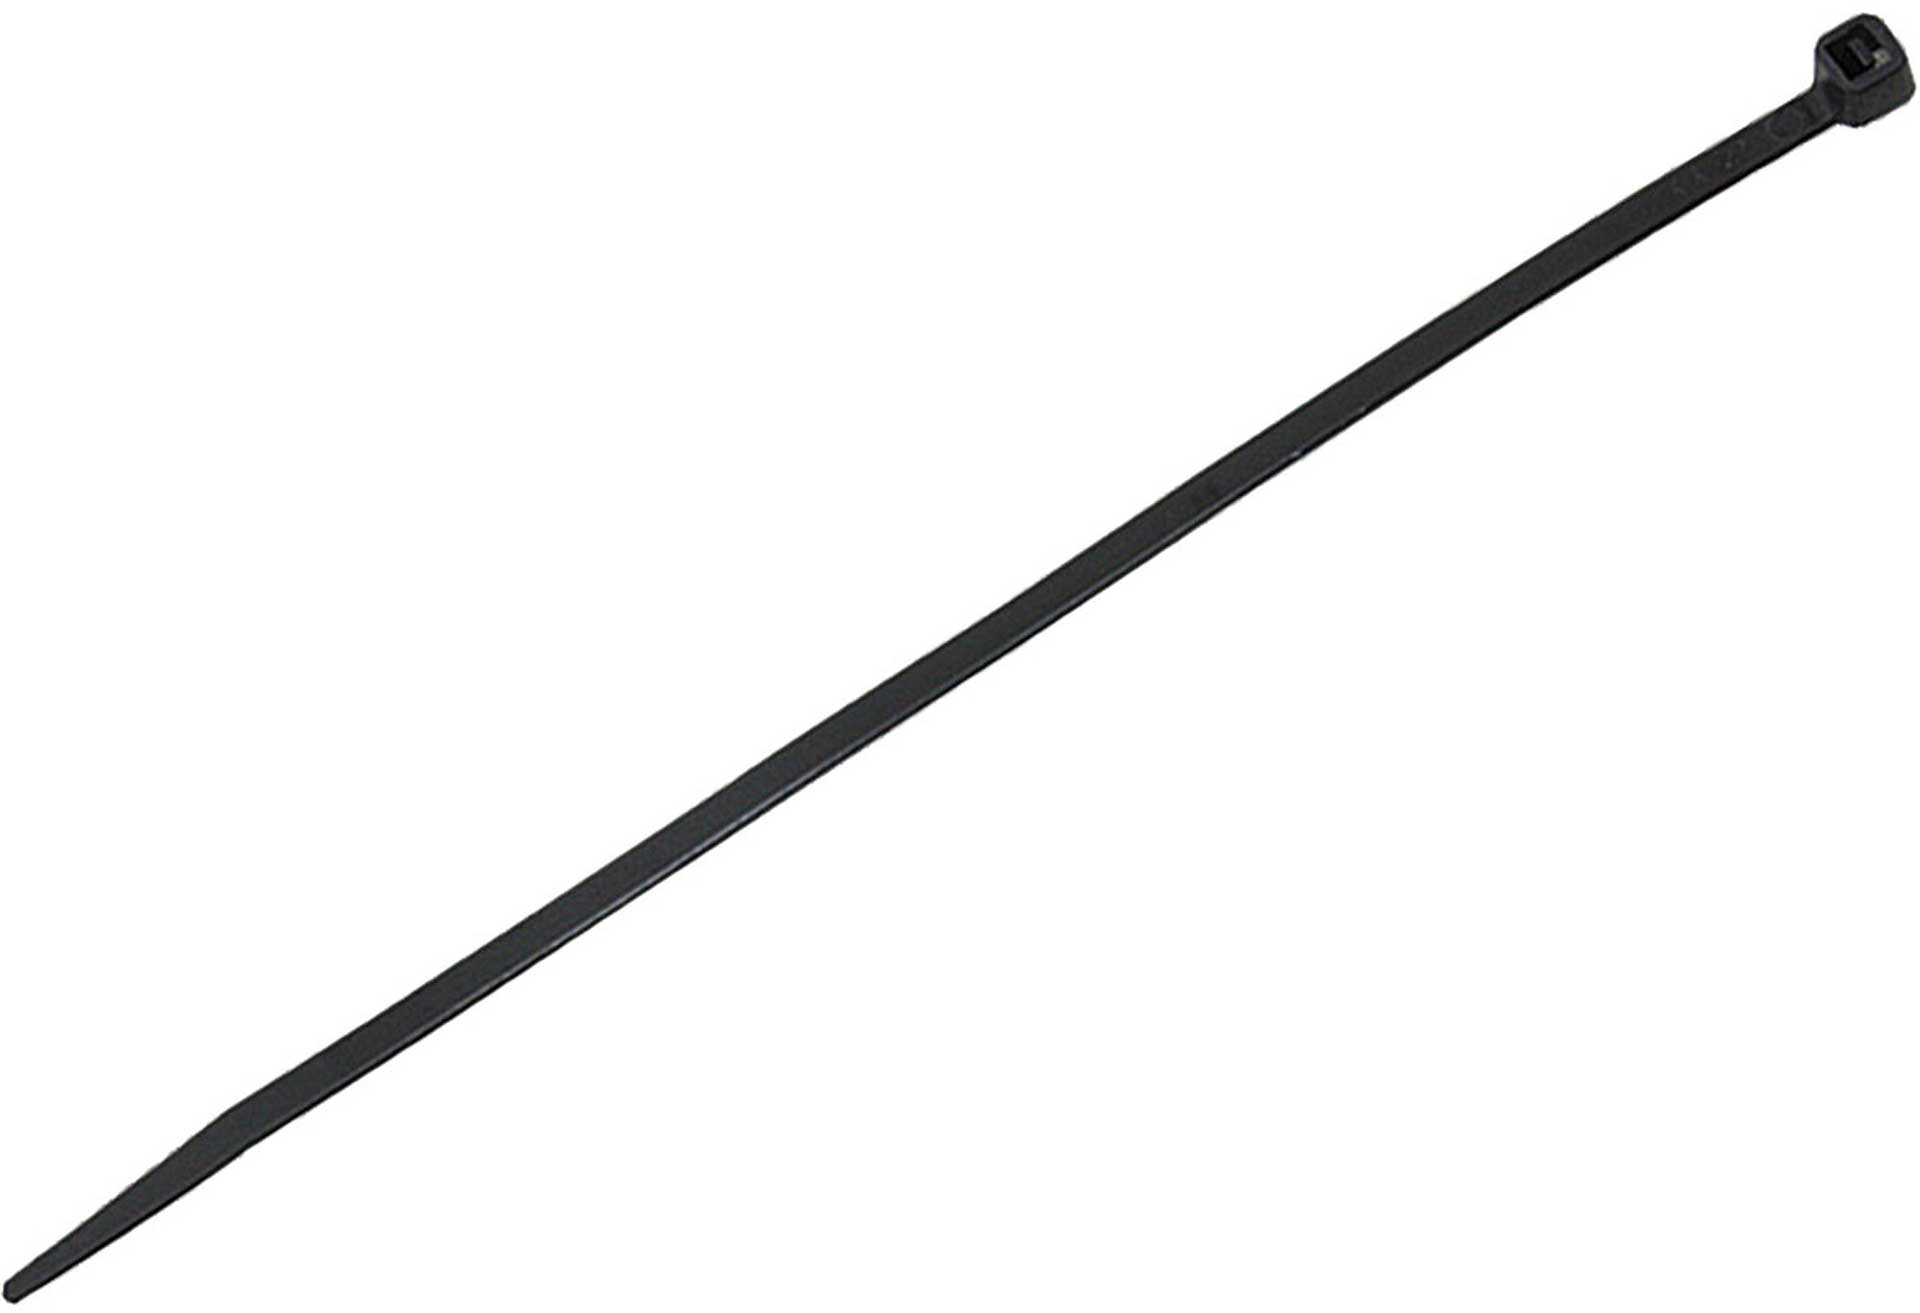 MODELLBAU LINDINGER CABLE STRAPS 200/4,8MM 100PCS. BLACK